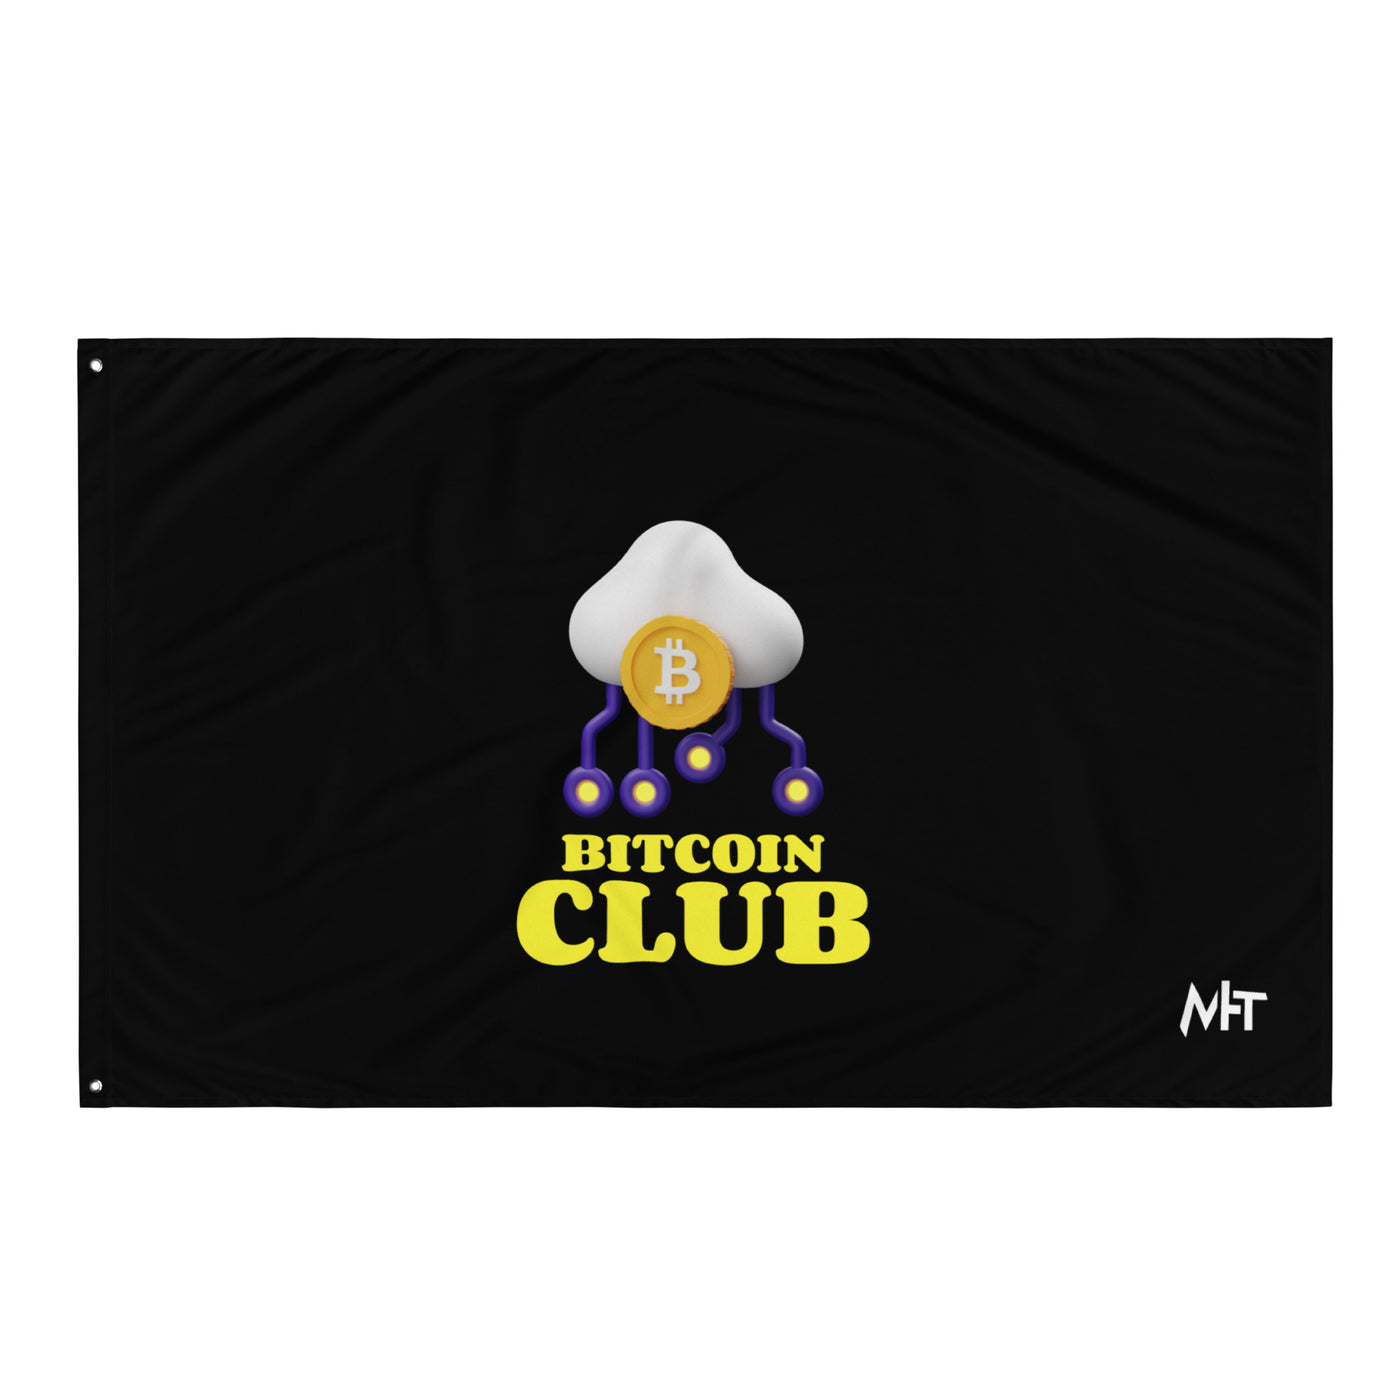 Bitcoin Club V4 Flag